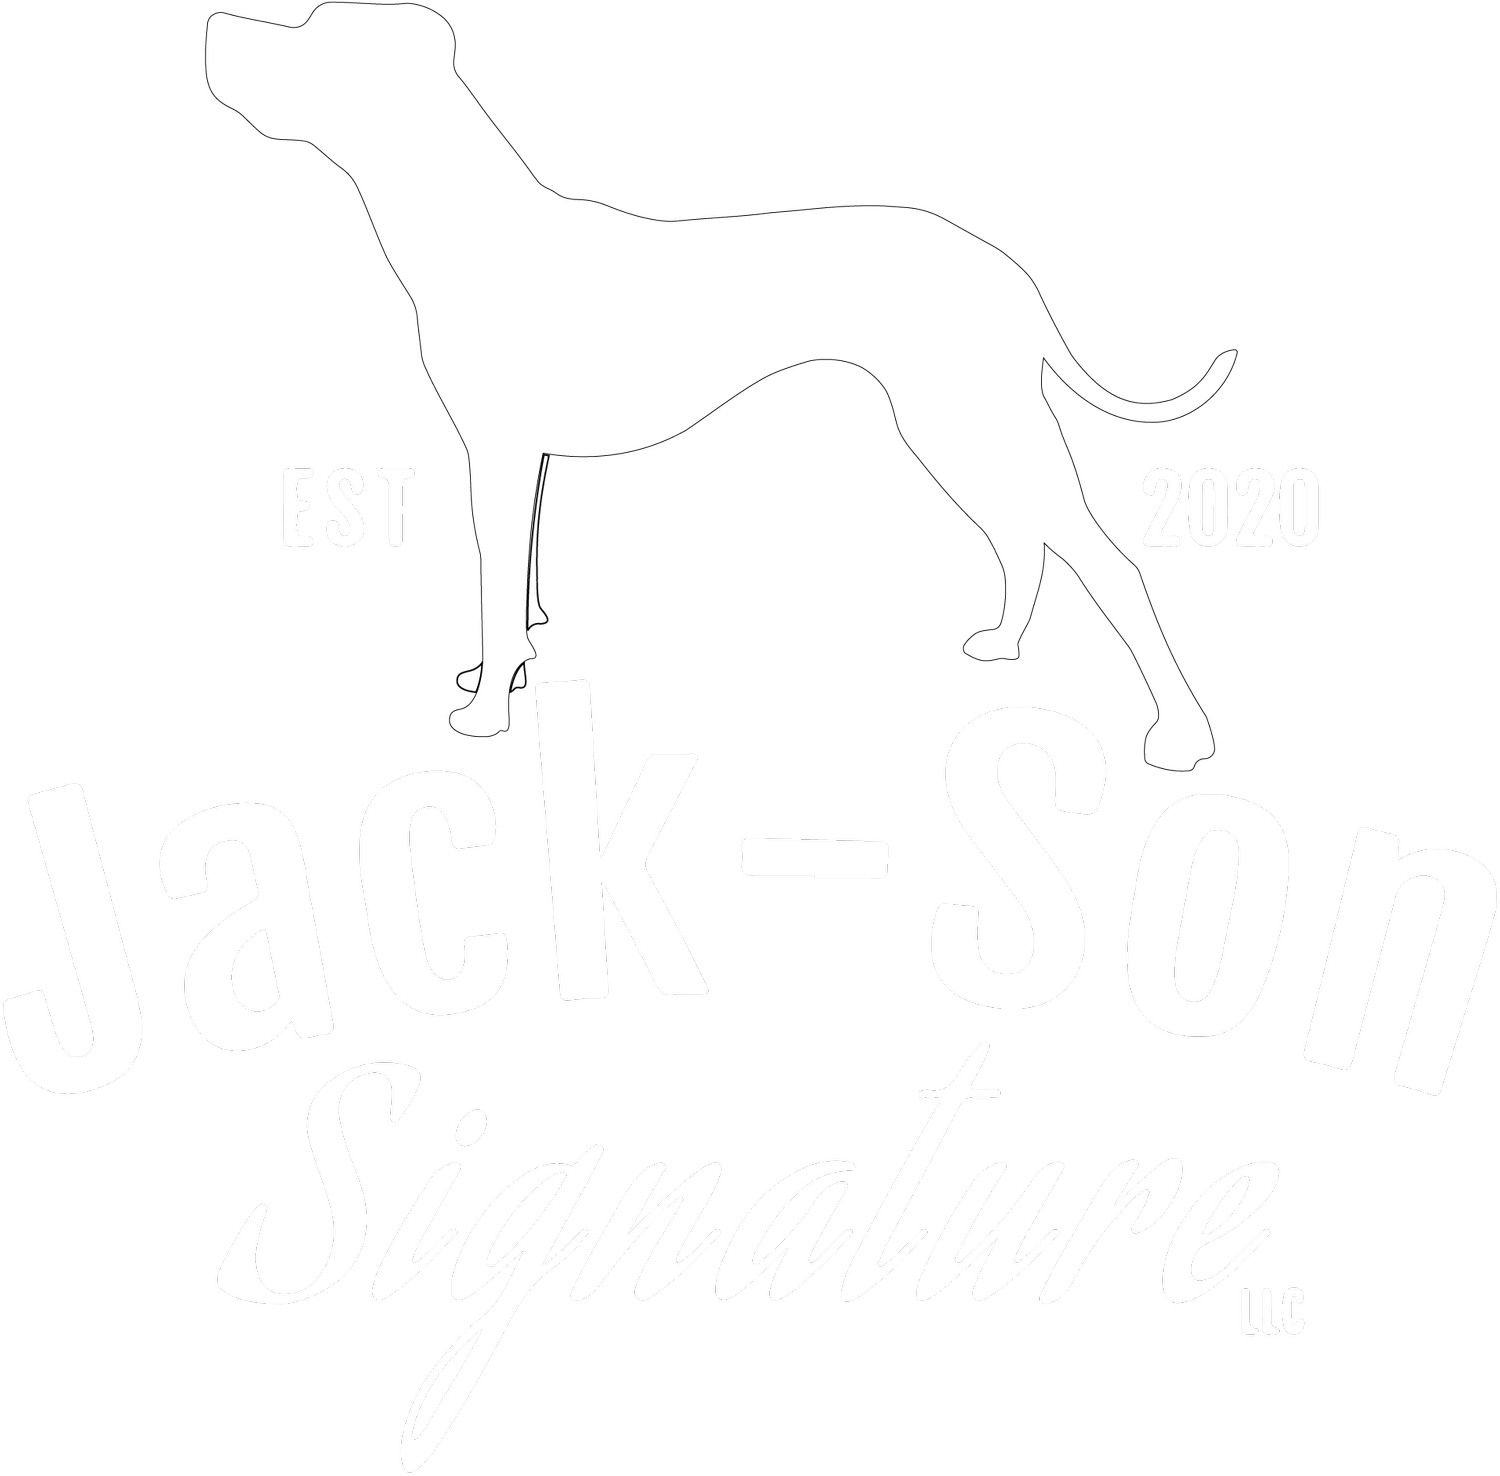 Jack-Son Signature